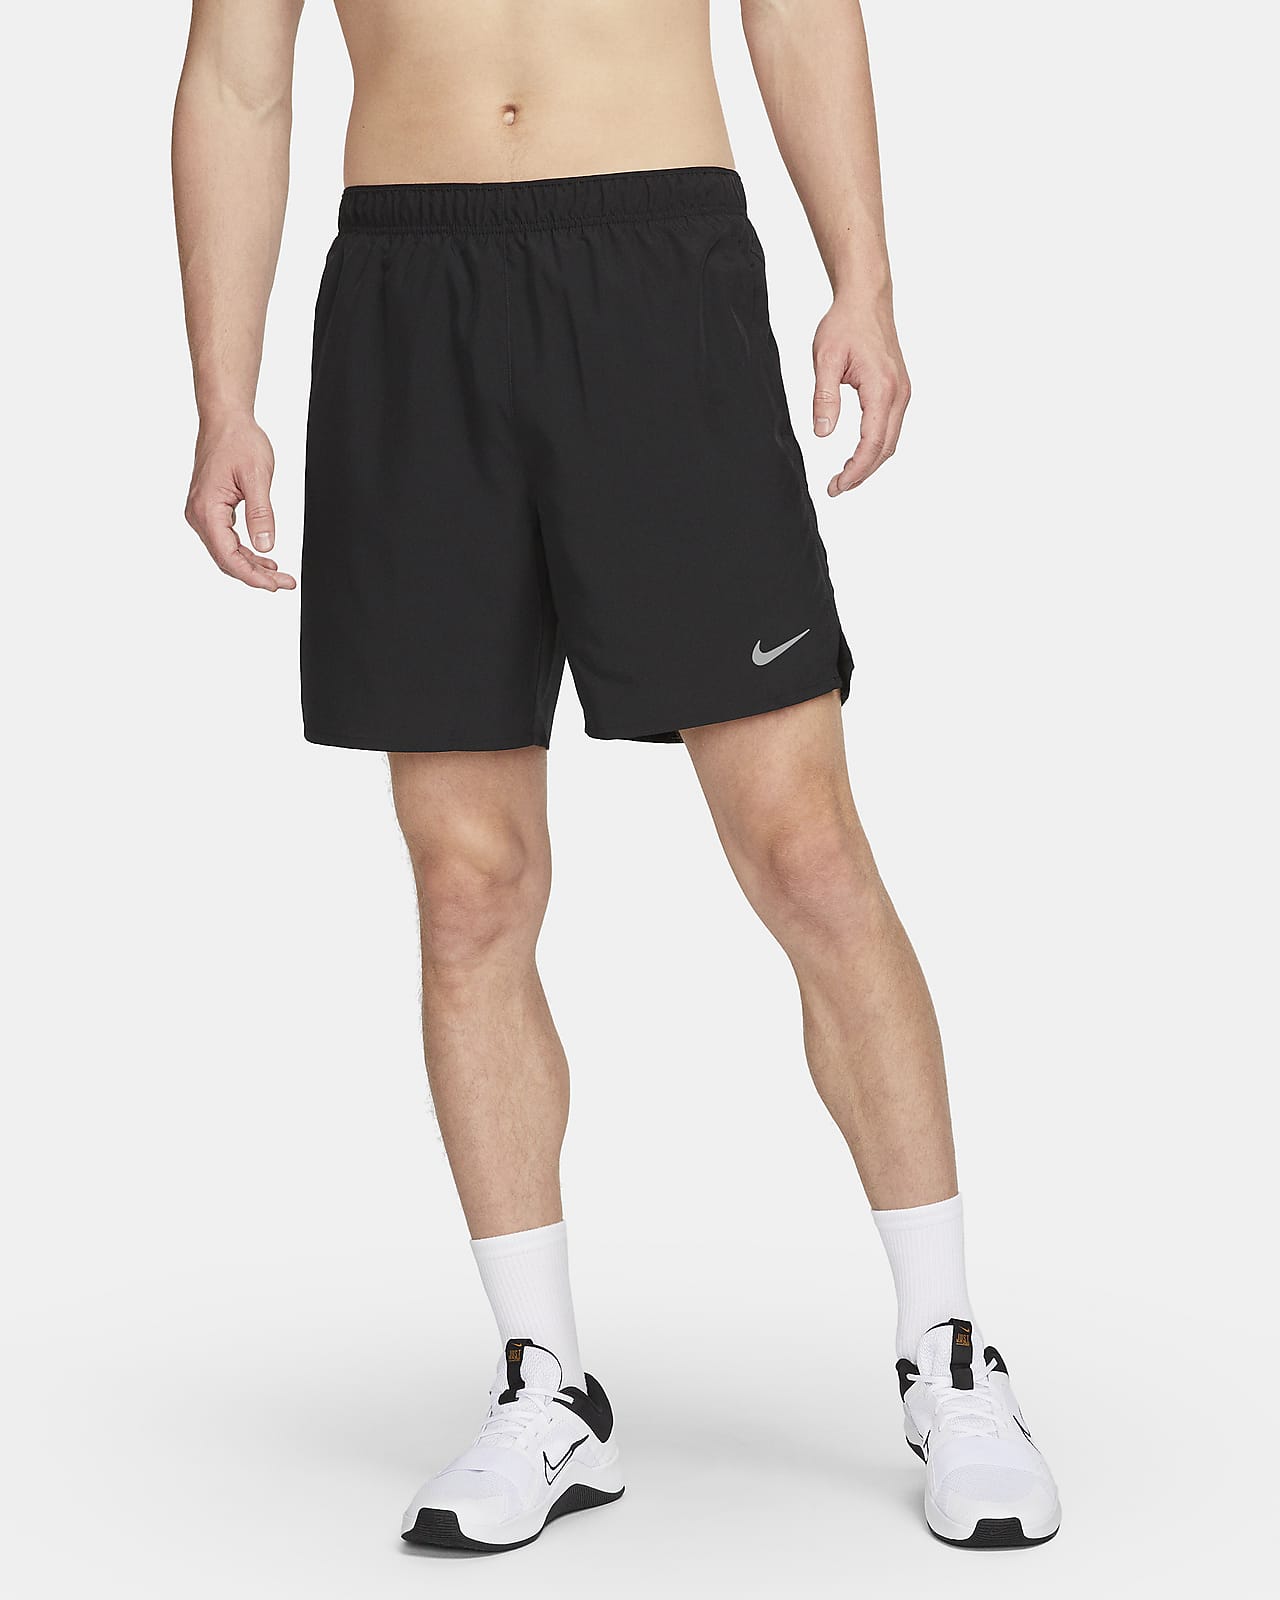 Nike Challenger Dri-FIT 18 cm-es, belső rövidnadrággal bélelt férfi futórövidnadrág